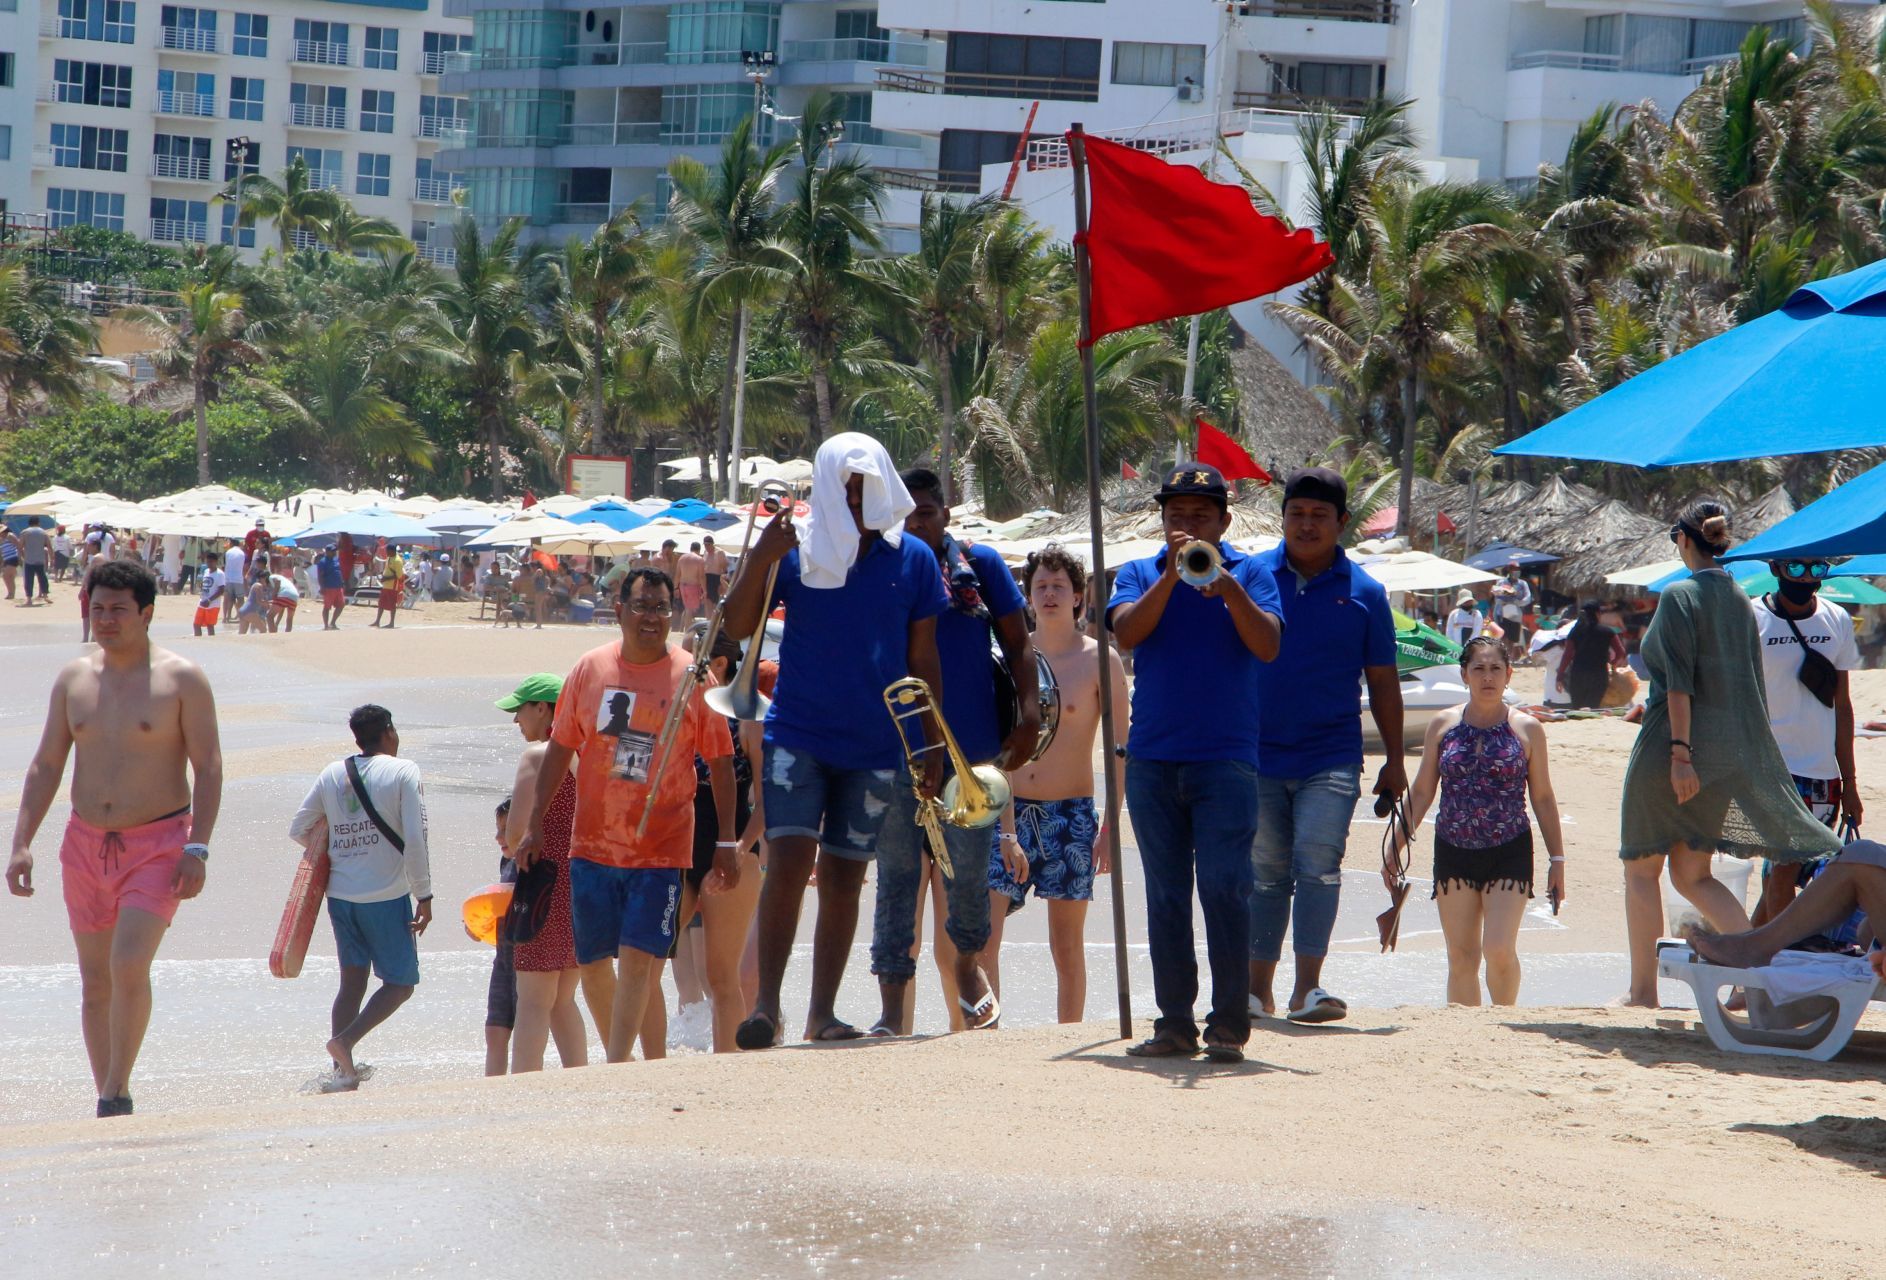 Se triplica basura en zona turística de Acapulco tras Día de Muertos